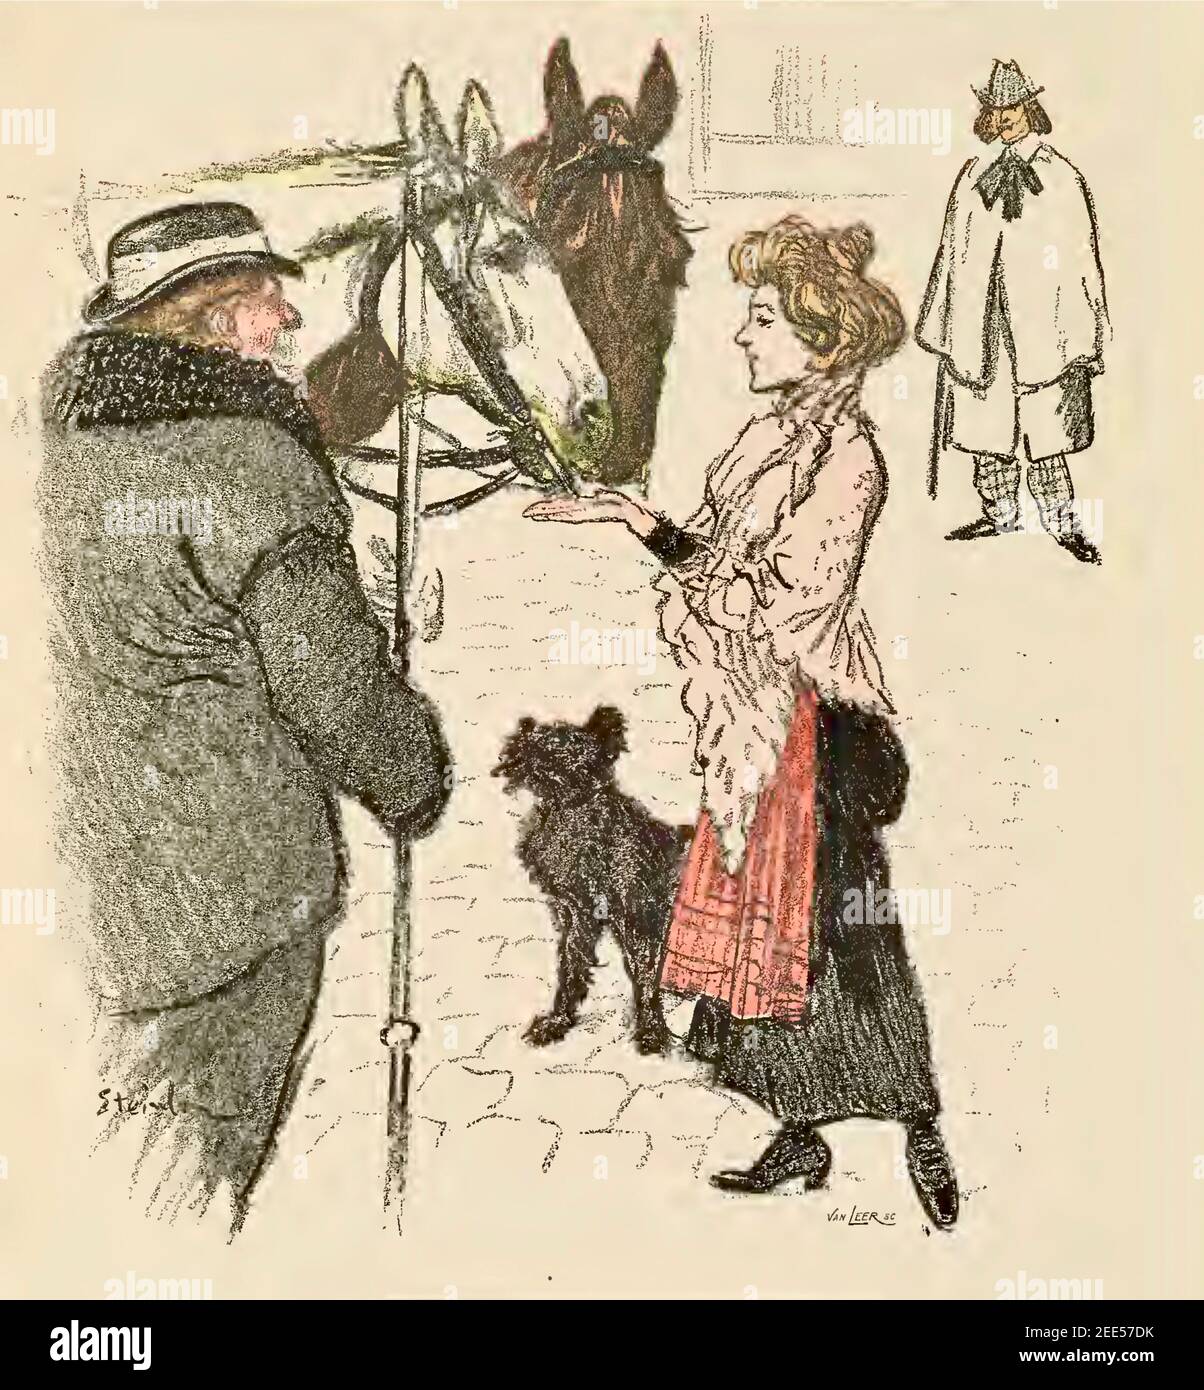 Eine Frau füttert einem Pferd einen Klumpen Zucker, während der Reiter und ein anderer Mann darauf schauen. Theophile Steinlen hat den Klumpen Zucker oder Unschuld betitelt? Stockfoto